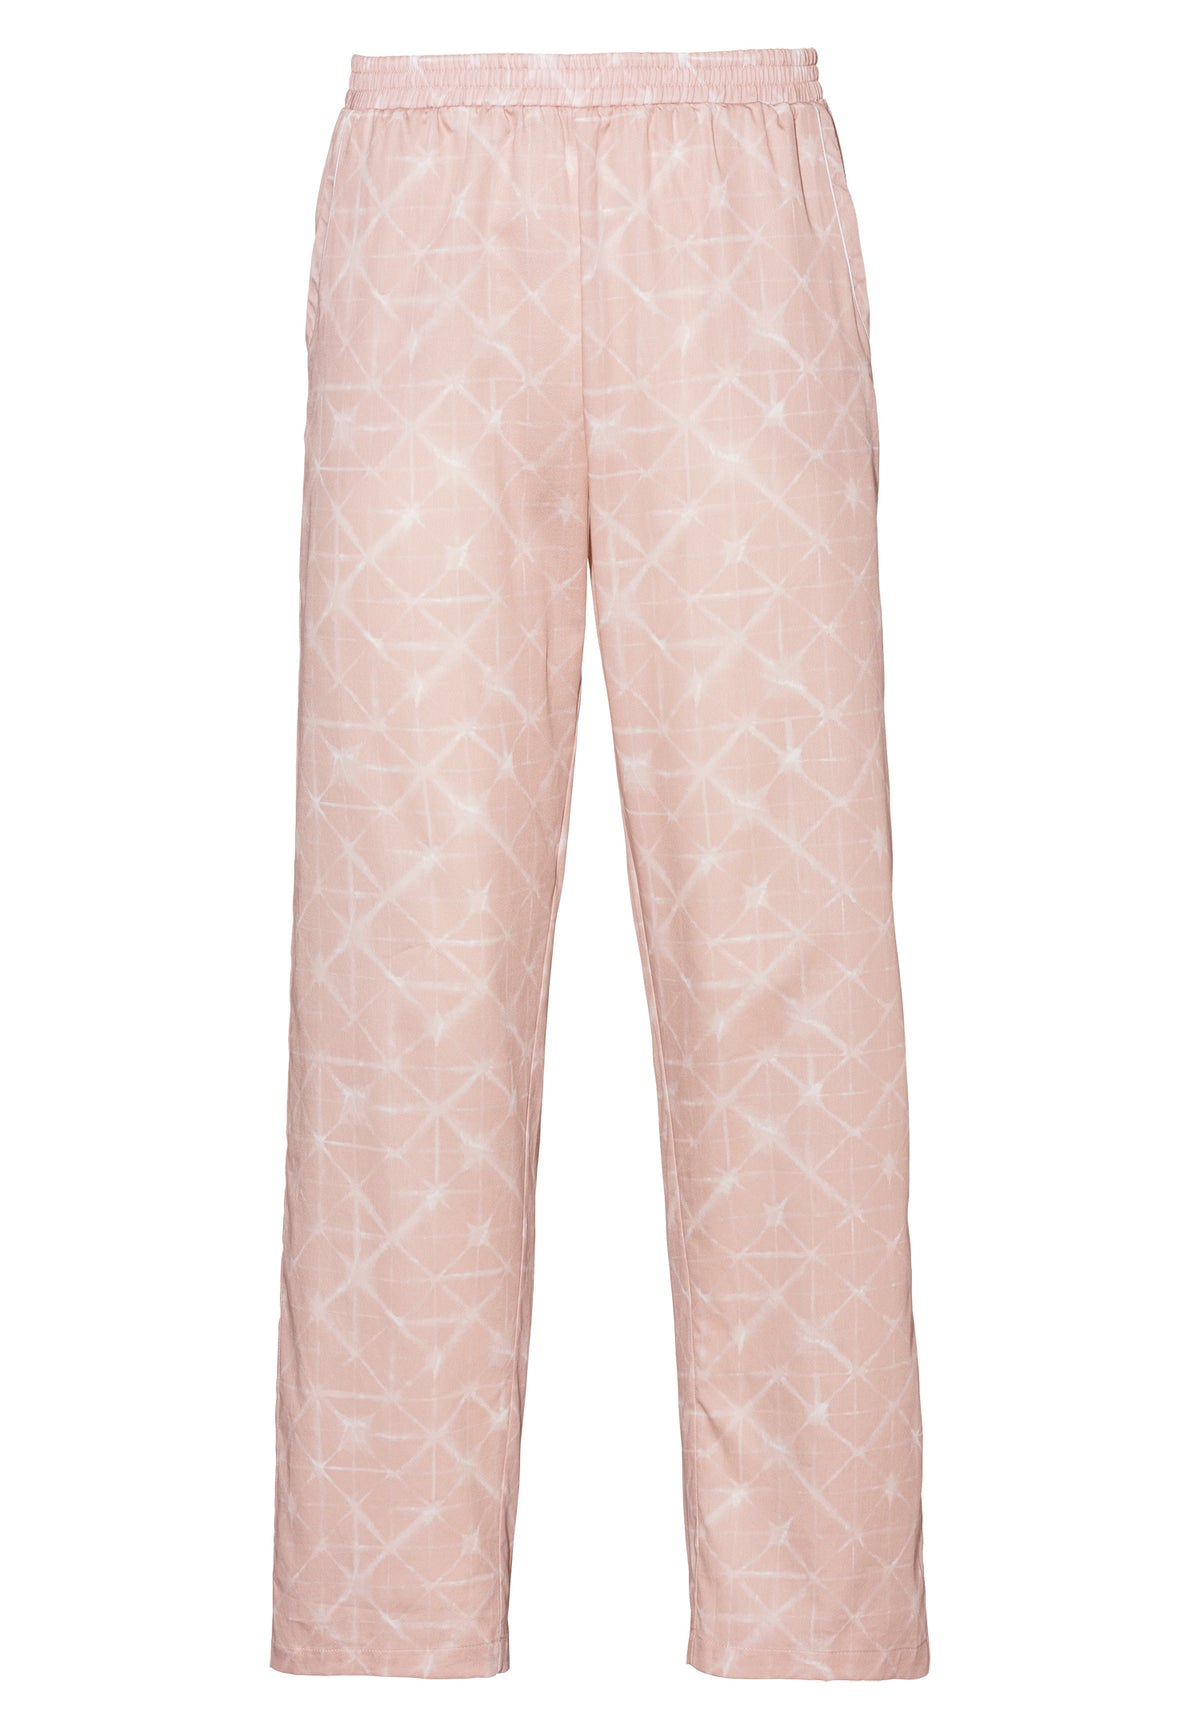 Cotton Sateen Print | Pants Long - geo-batic rose